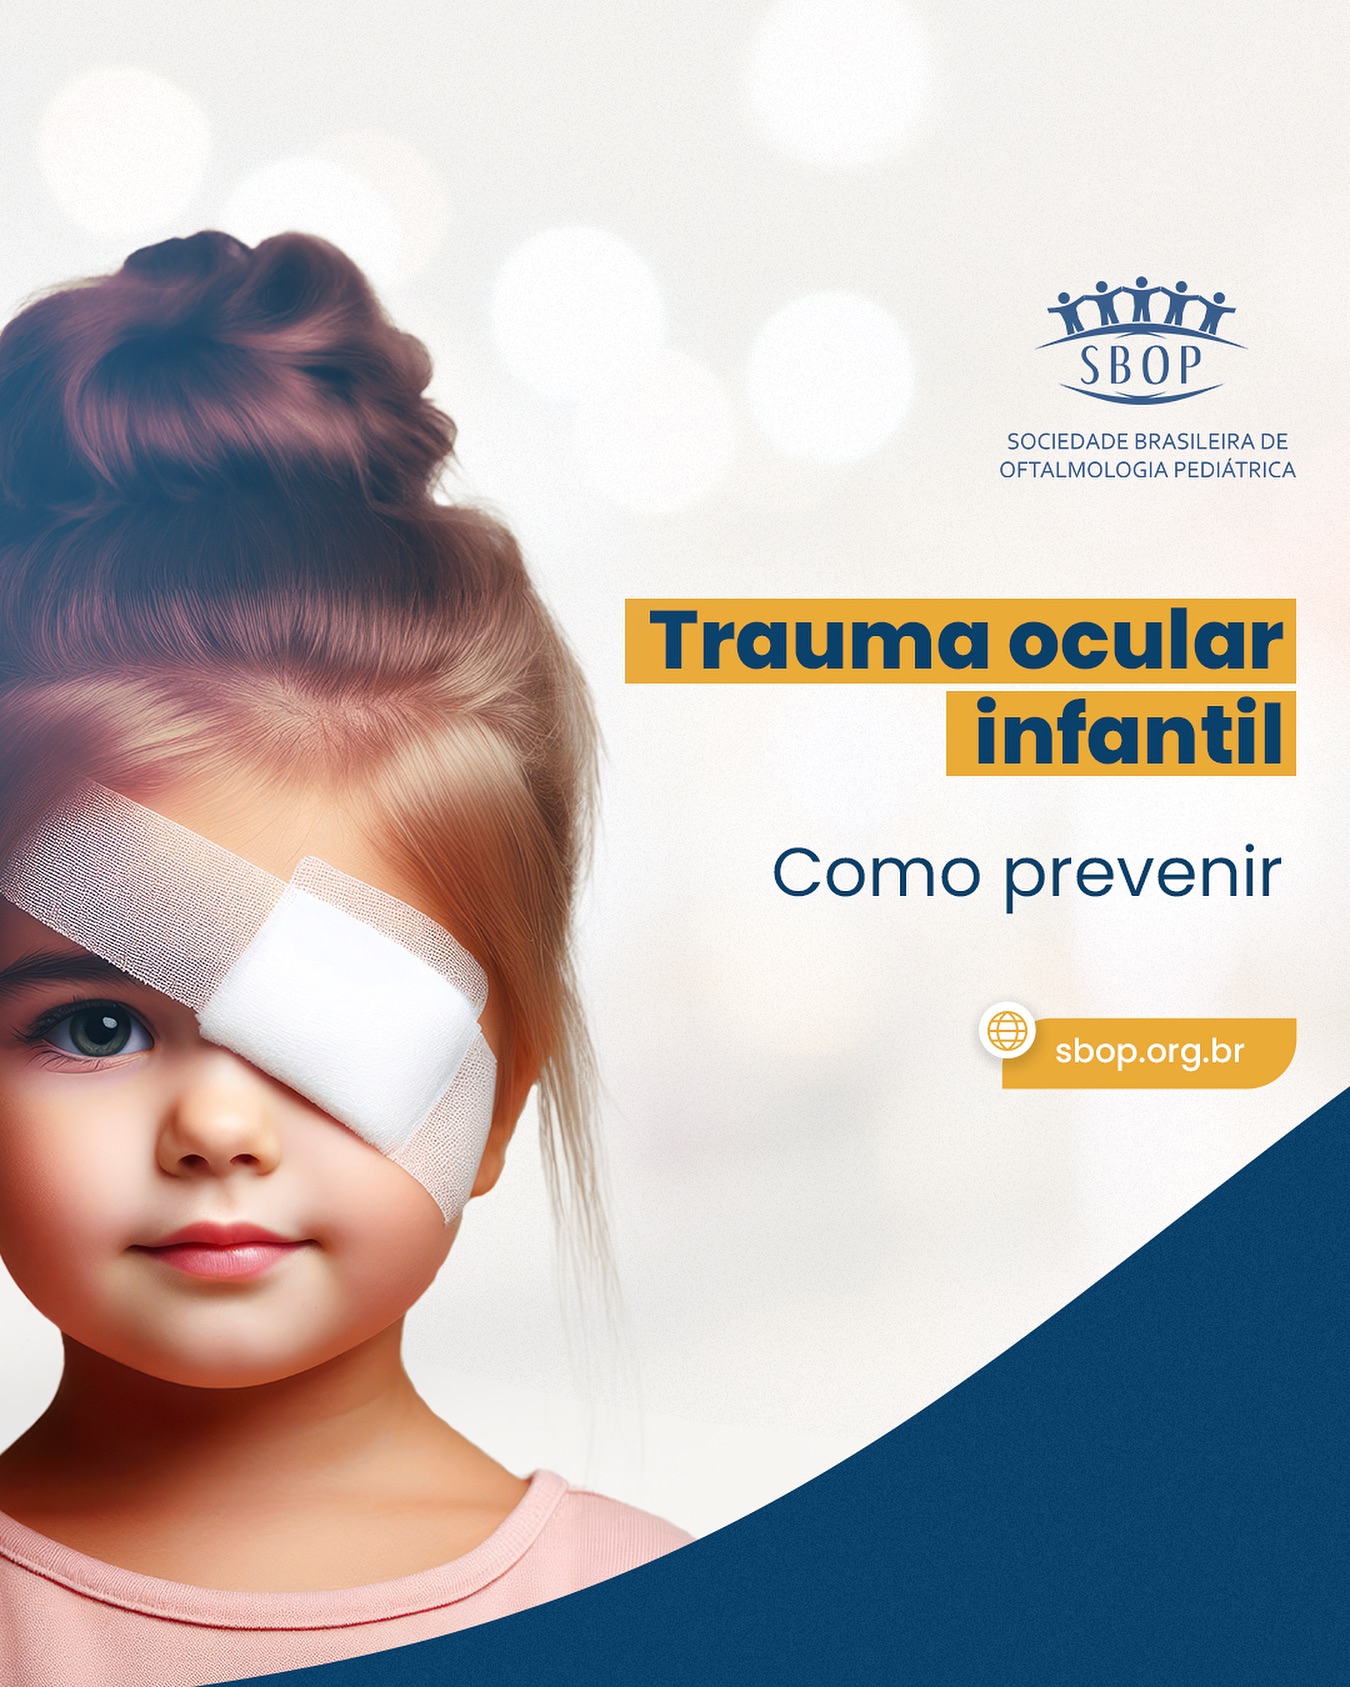 Trauma ocular infantil, como prevenir